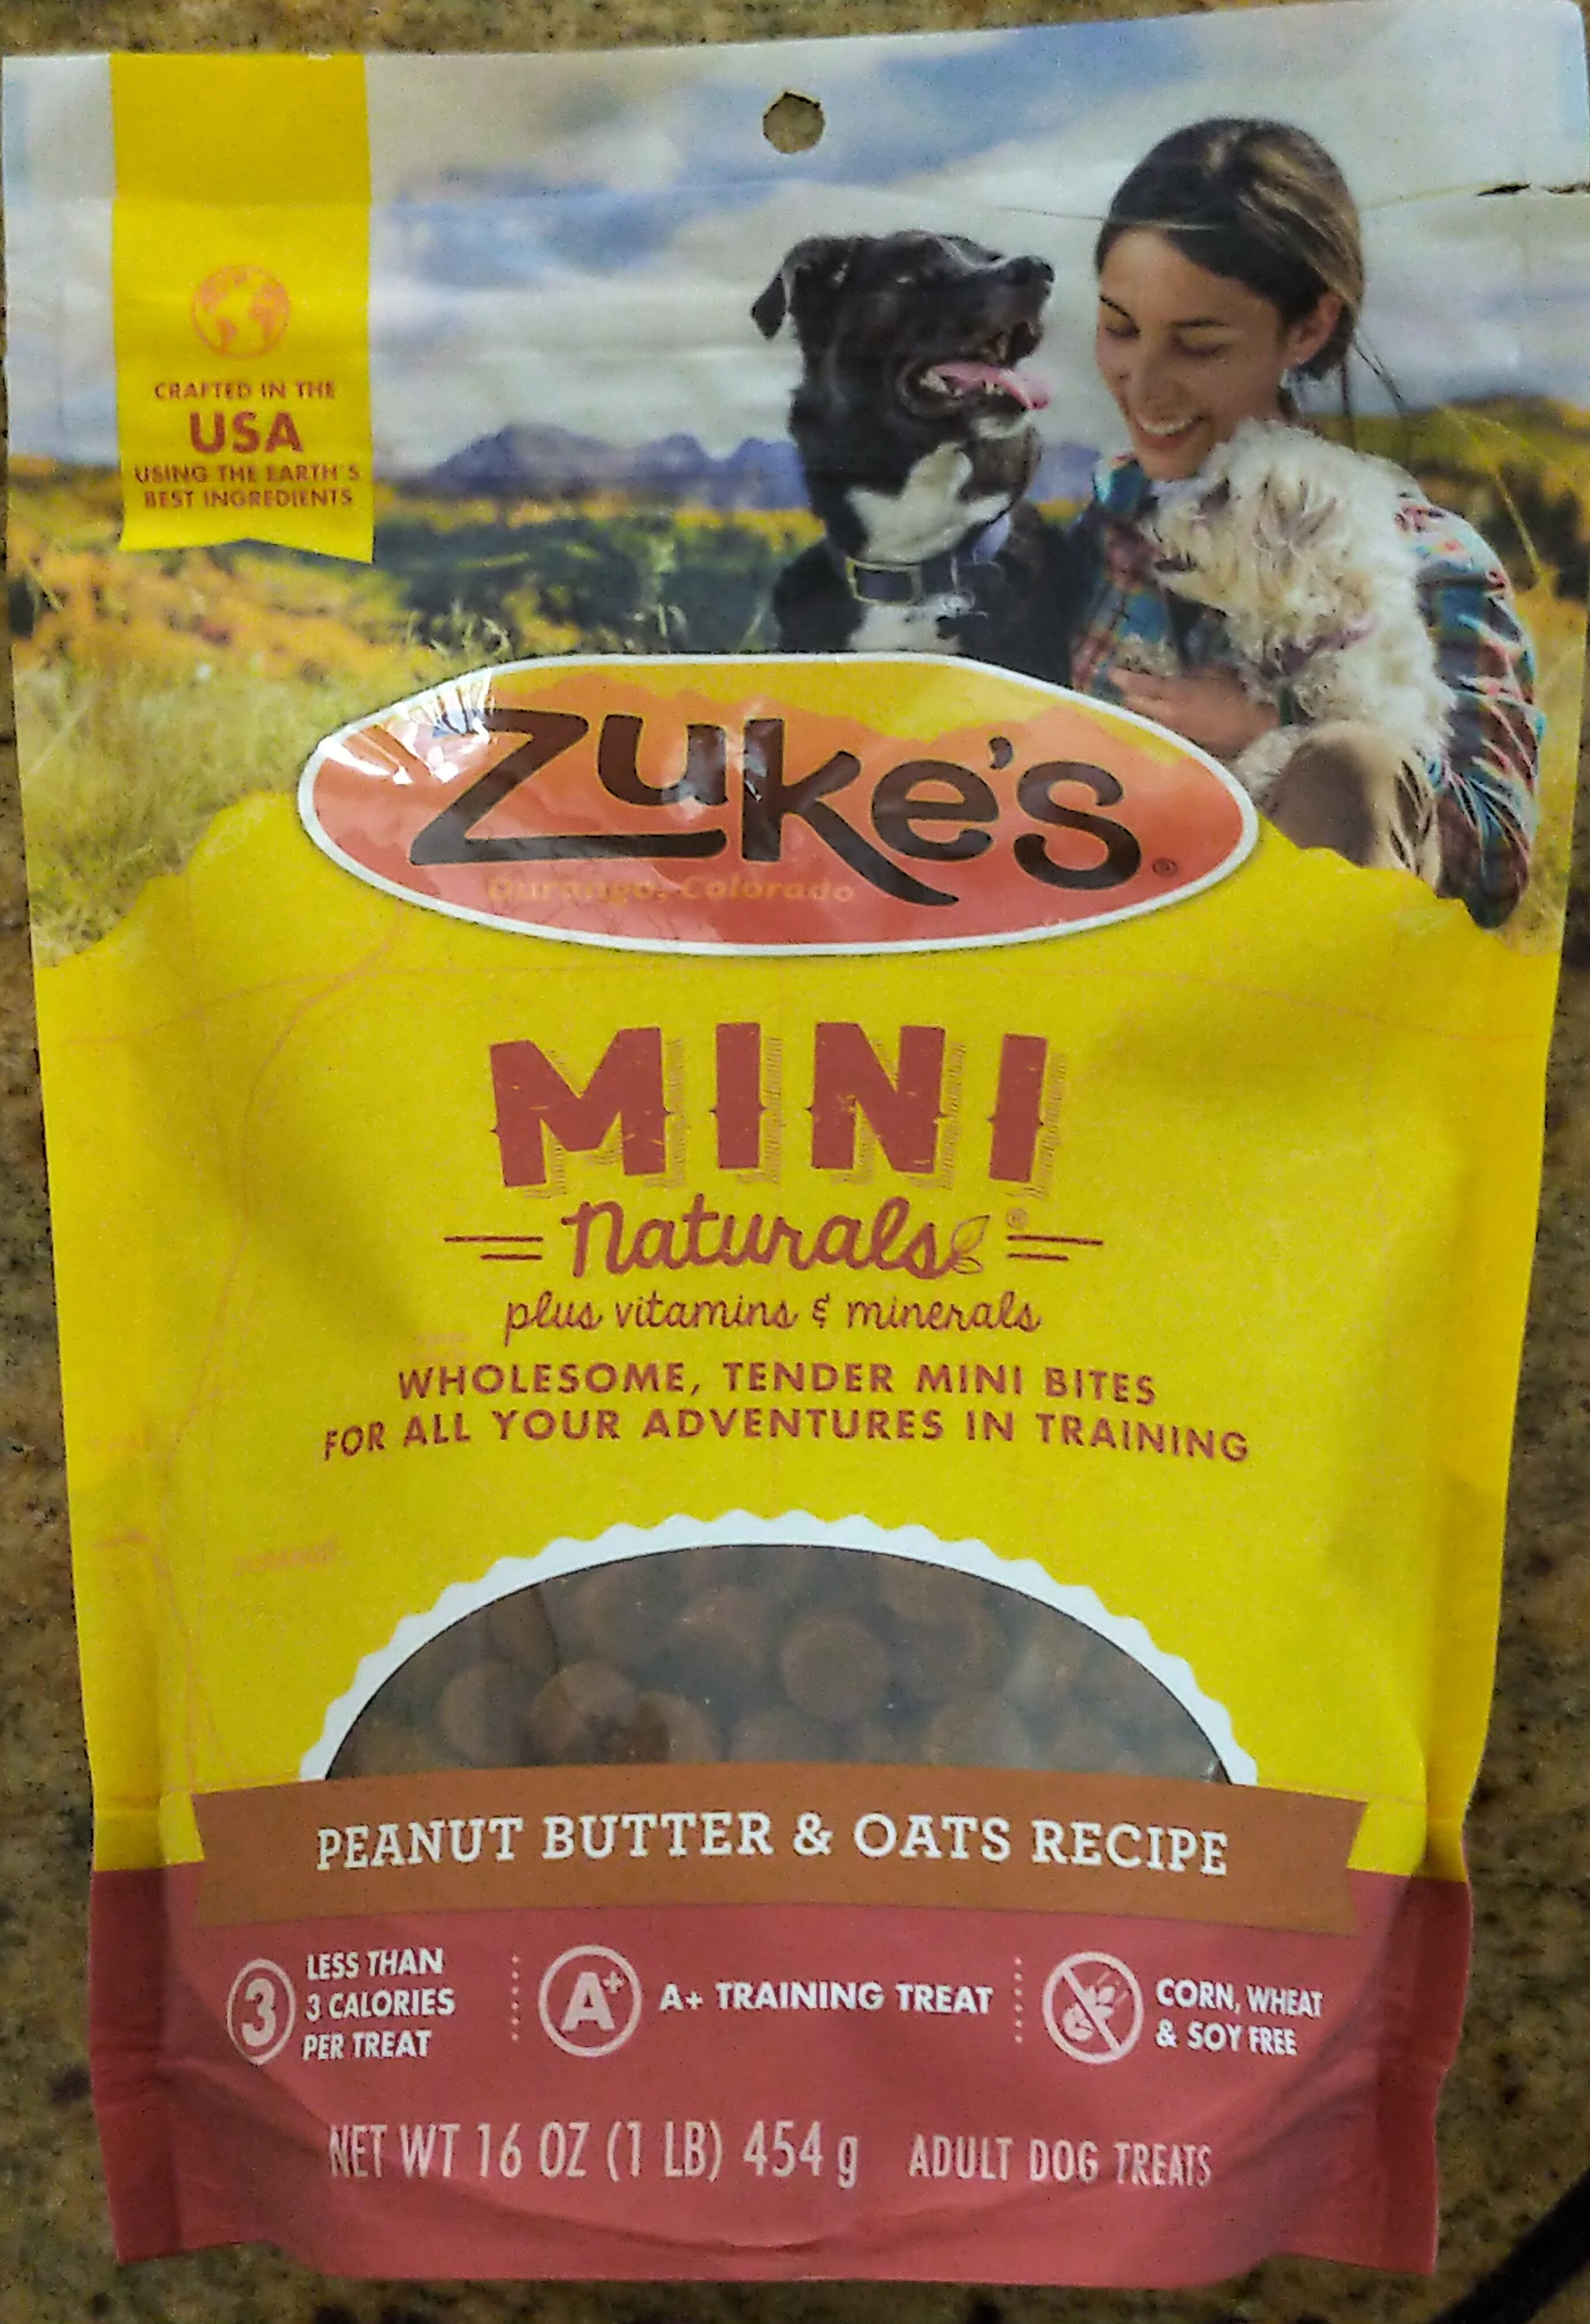 Mini Naturals Adult Dog Treats Peanut Butter & Oats Recipe - Product - en